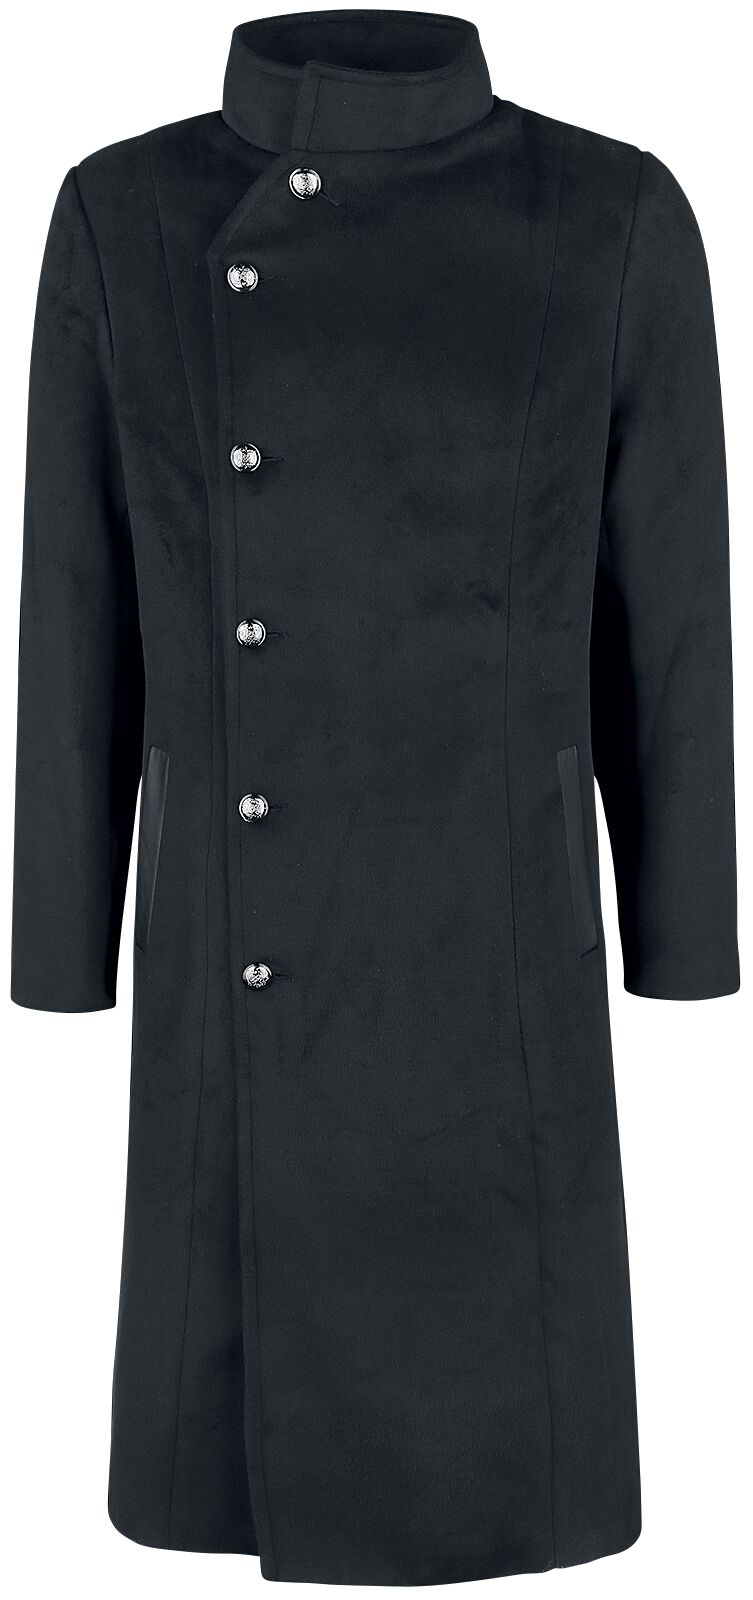 H&R London Winter Coat Wintermantel schwarz in 4XL